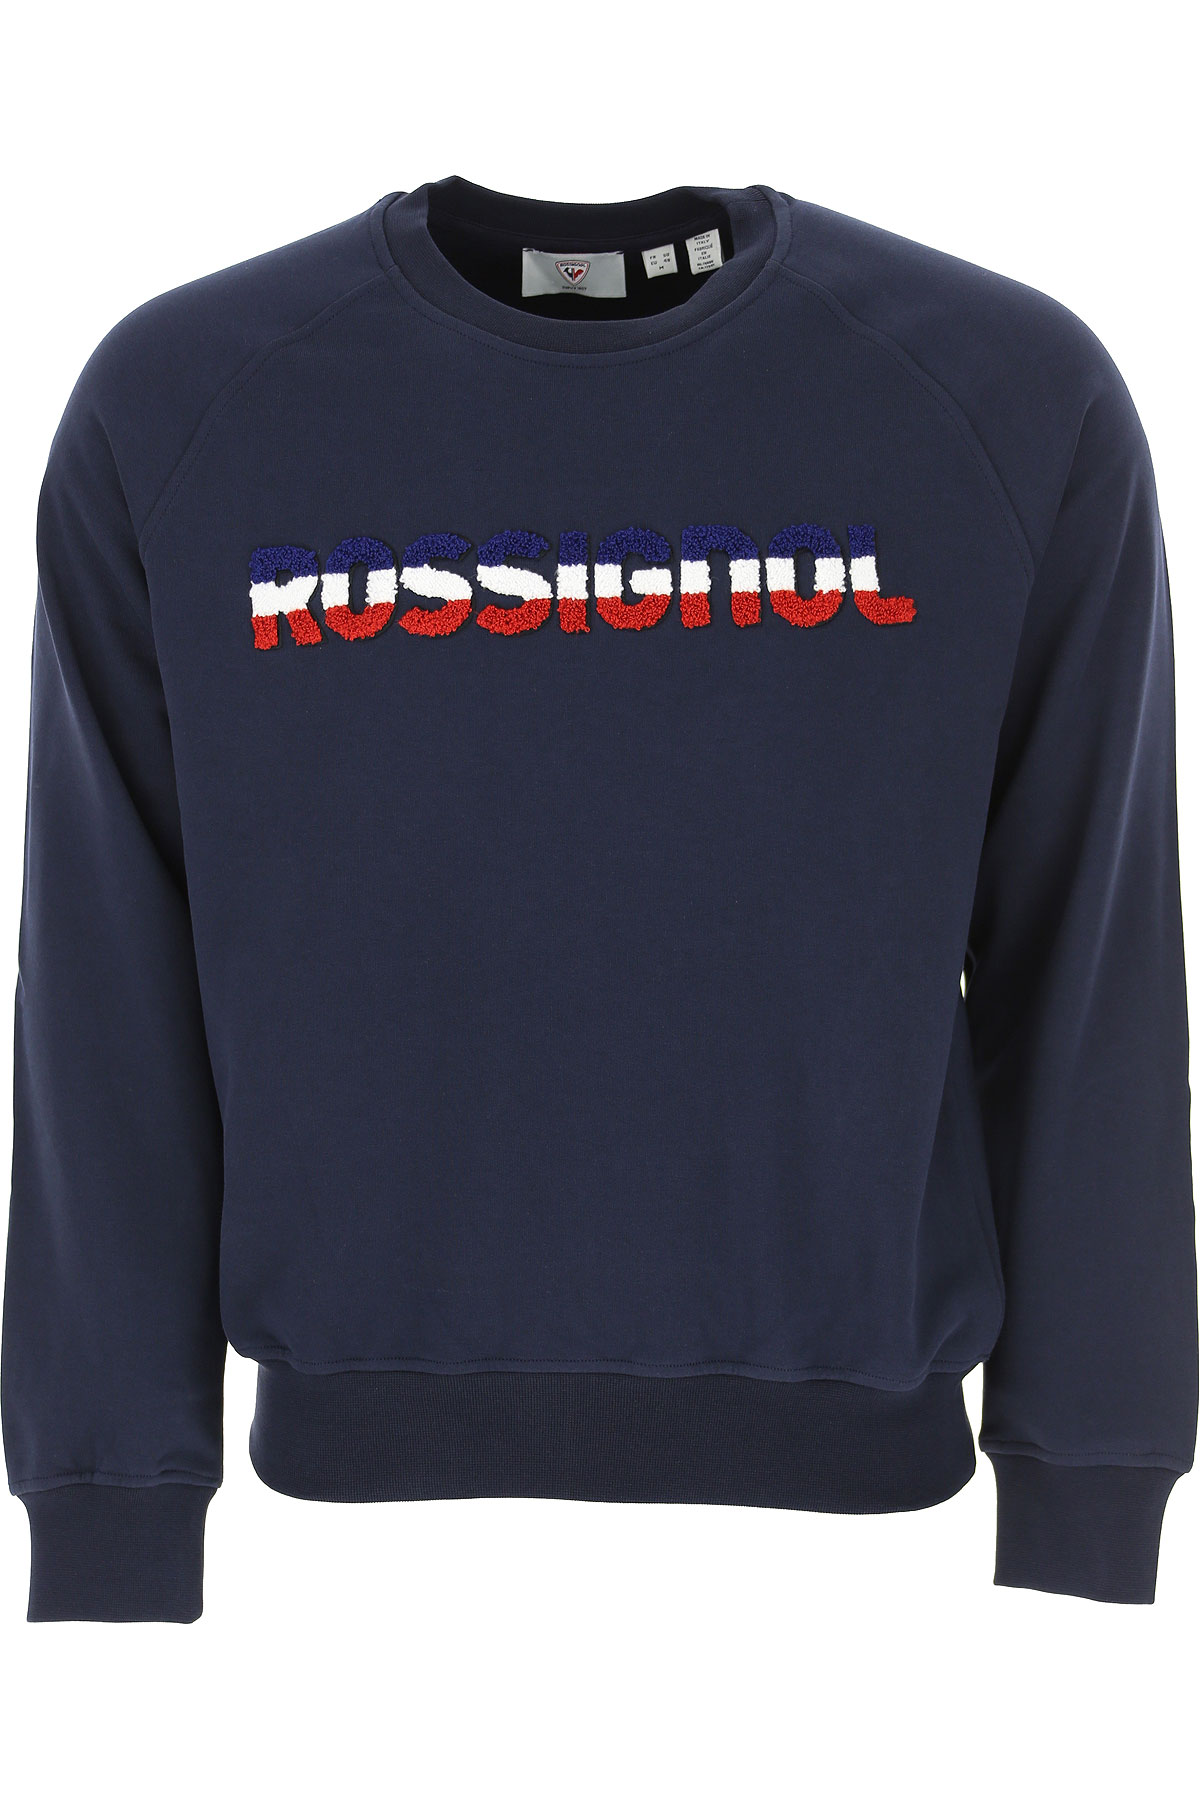 Rossignol Sweatshirt für Herren, Kapuzenpulli, Hoodie, Sweats Günstig im Sale, Dunkles Marineblau, Baumwolle, 2017, L M XL